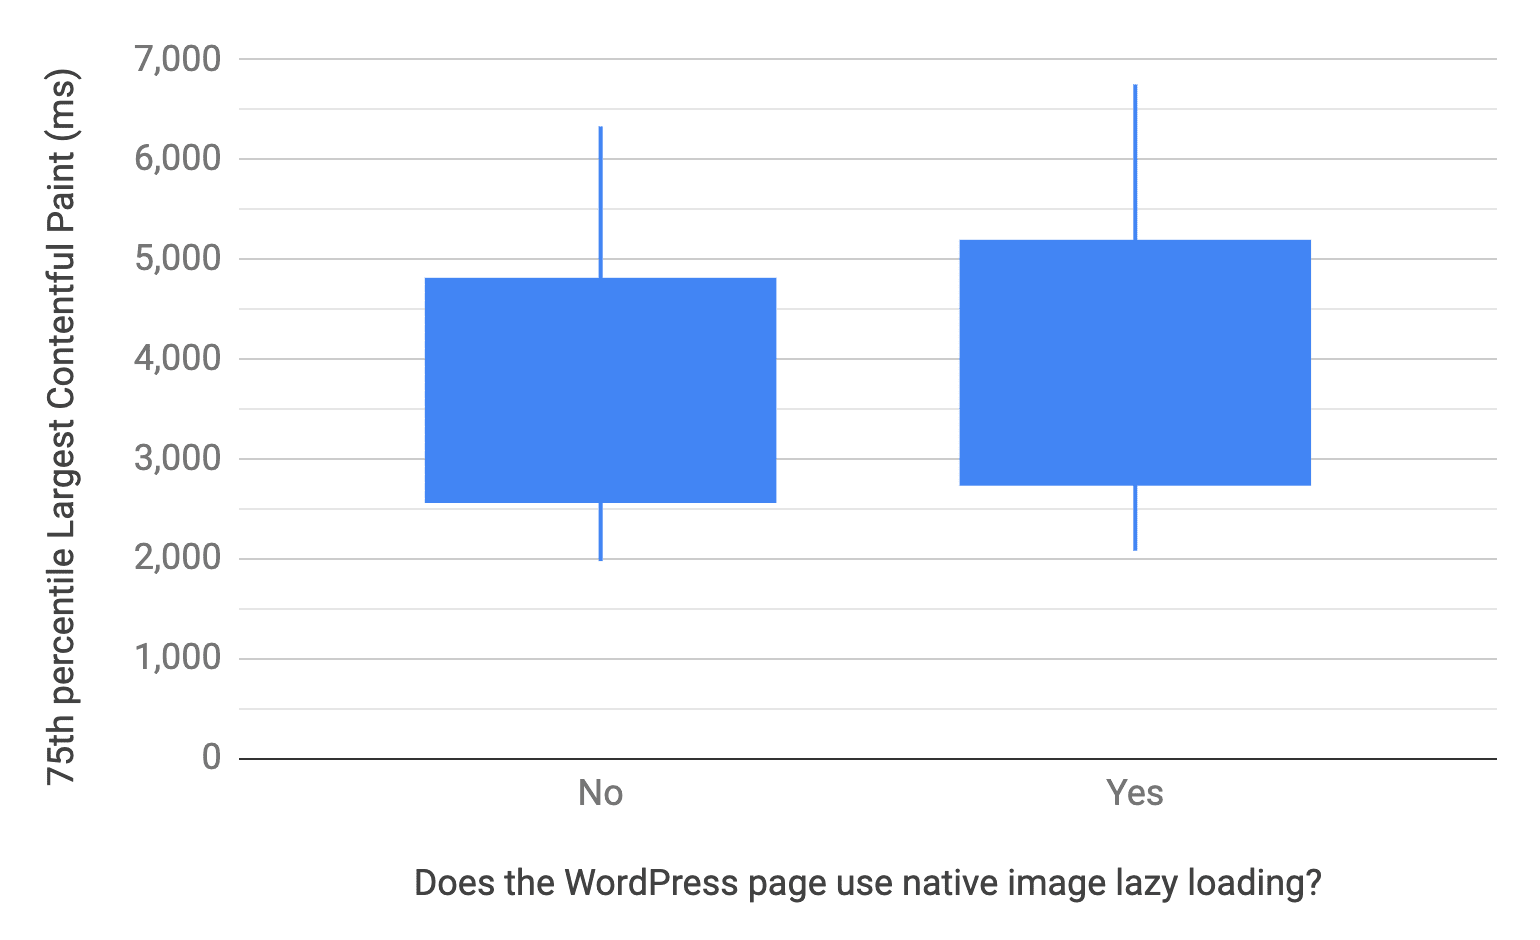 브라우저 수준 이미지 지연 로드를 사용하거나 사용하지 않는 WordPress 페이지의 10번째, 25번째, 75번째, 90번째 백분위수를 보여주는 상자 및 수염 차트입니다. 이전 차트와 유사하게 LCP를 사용하지 않는 페이지의 LCP 분포도 비교적 빠릅니다.